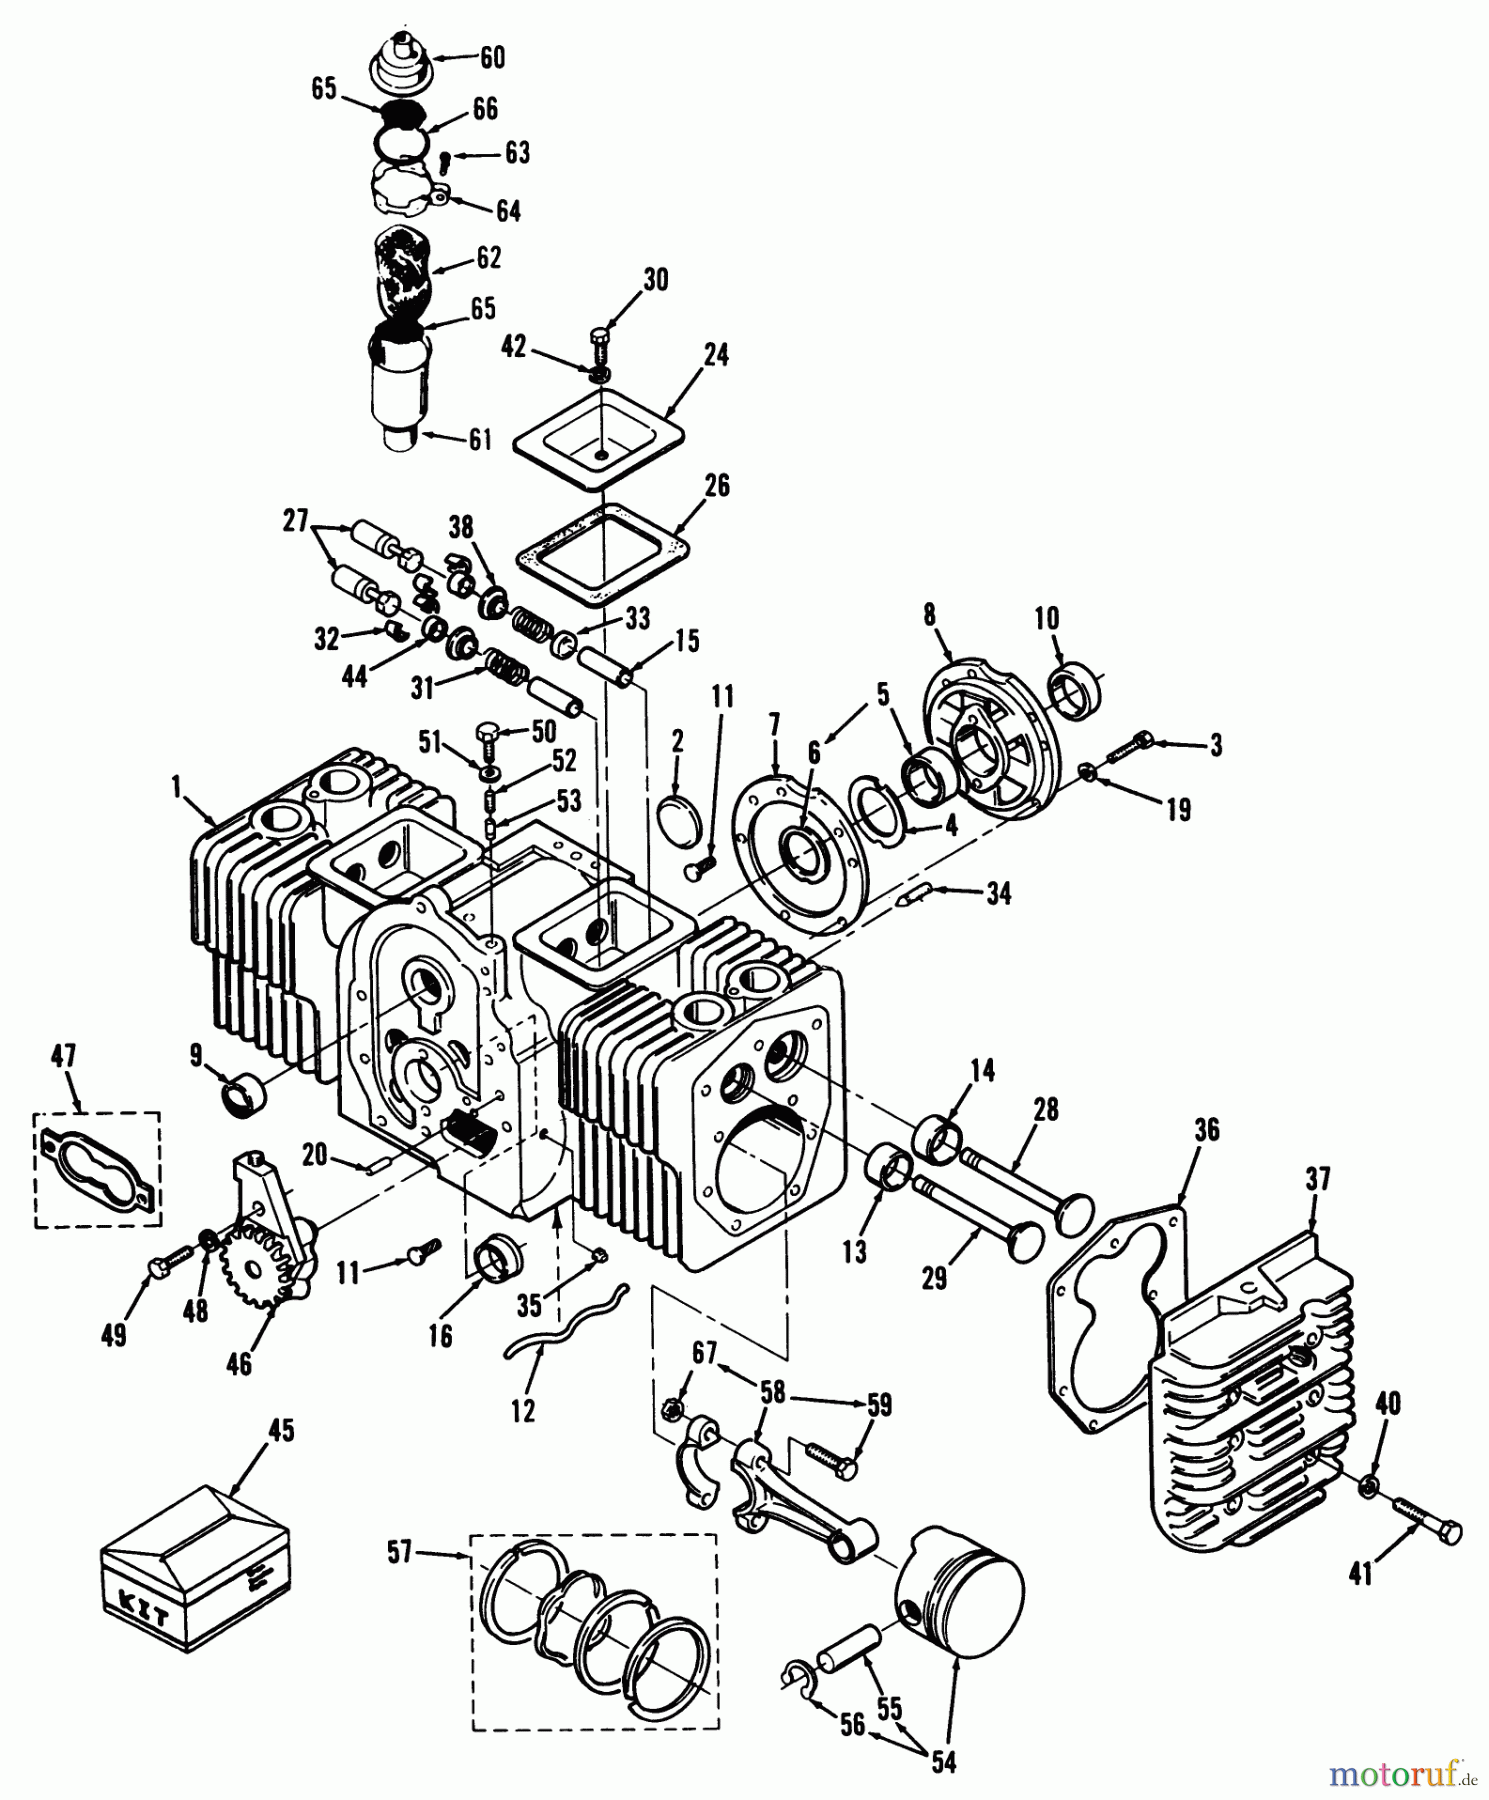  Toro Neu Mowers, Lawn & Garden Tractor Seite 1 41-20OE02 (520-H) - Toro 520-H Garden Tractor, 1991 (1000001-1999999) ENGINE CYLINDER BLOCK